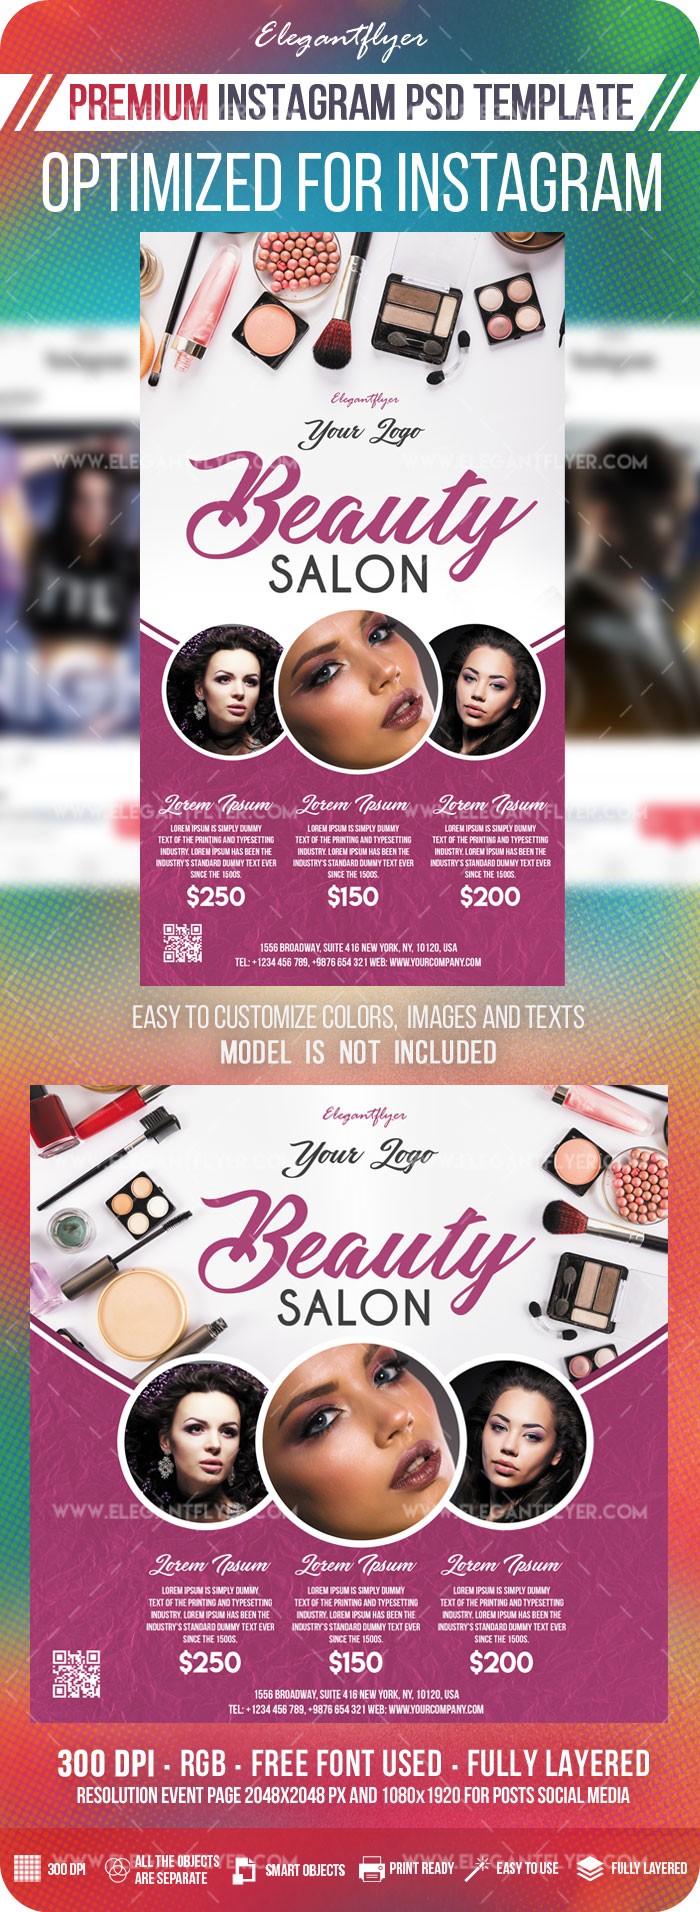 Beauty Salon Instagram by ElegantFlyer